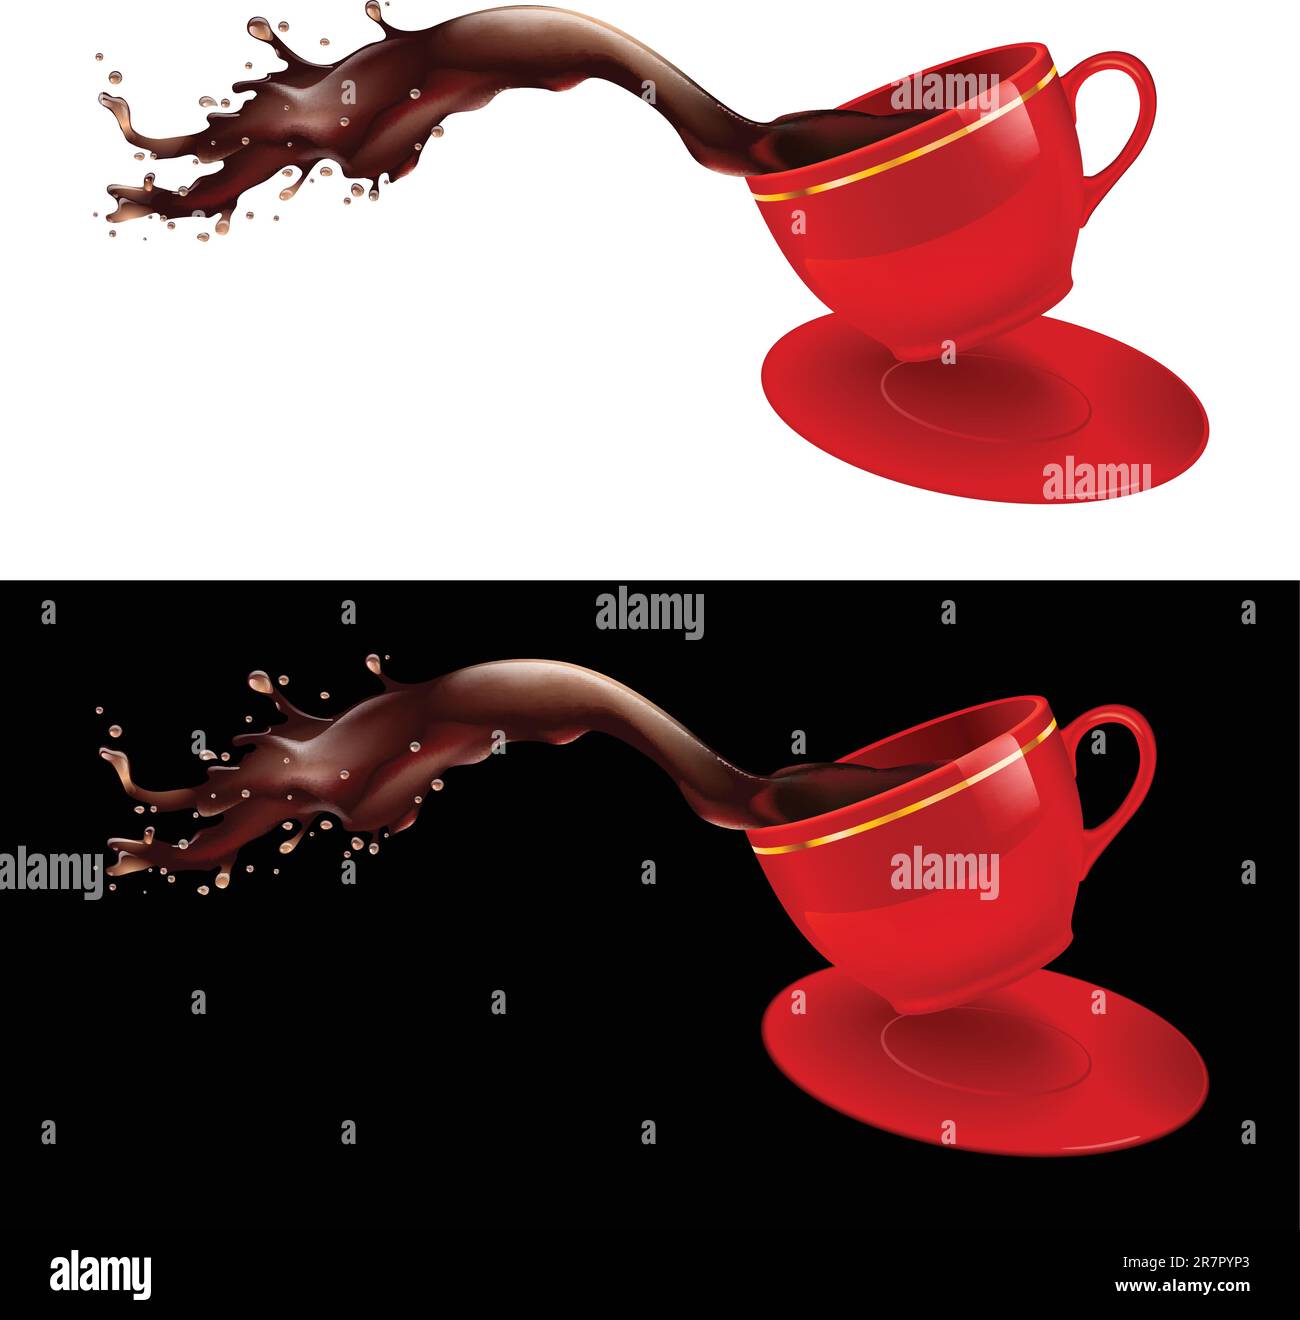 Immagine vettoriale di un caffè che fuoriesce da una tazza. Design rosso. Illustrazione Vettoriale